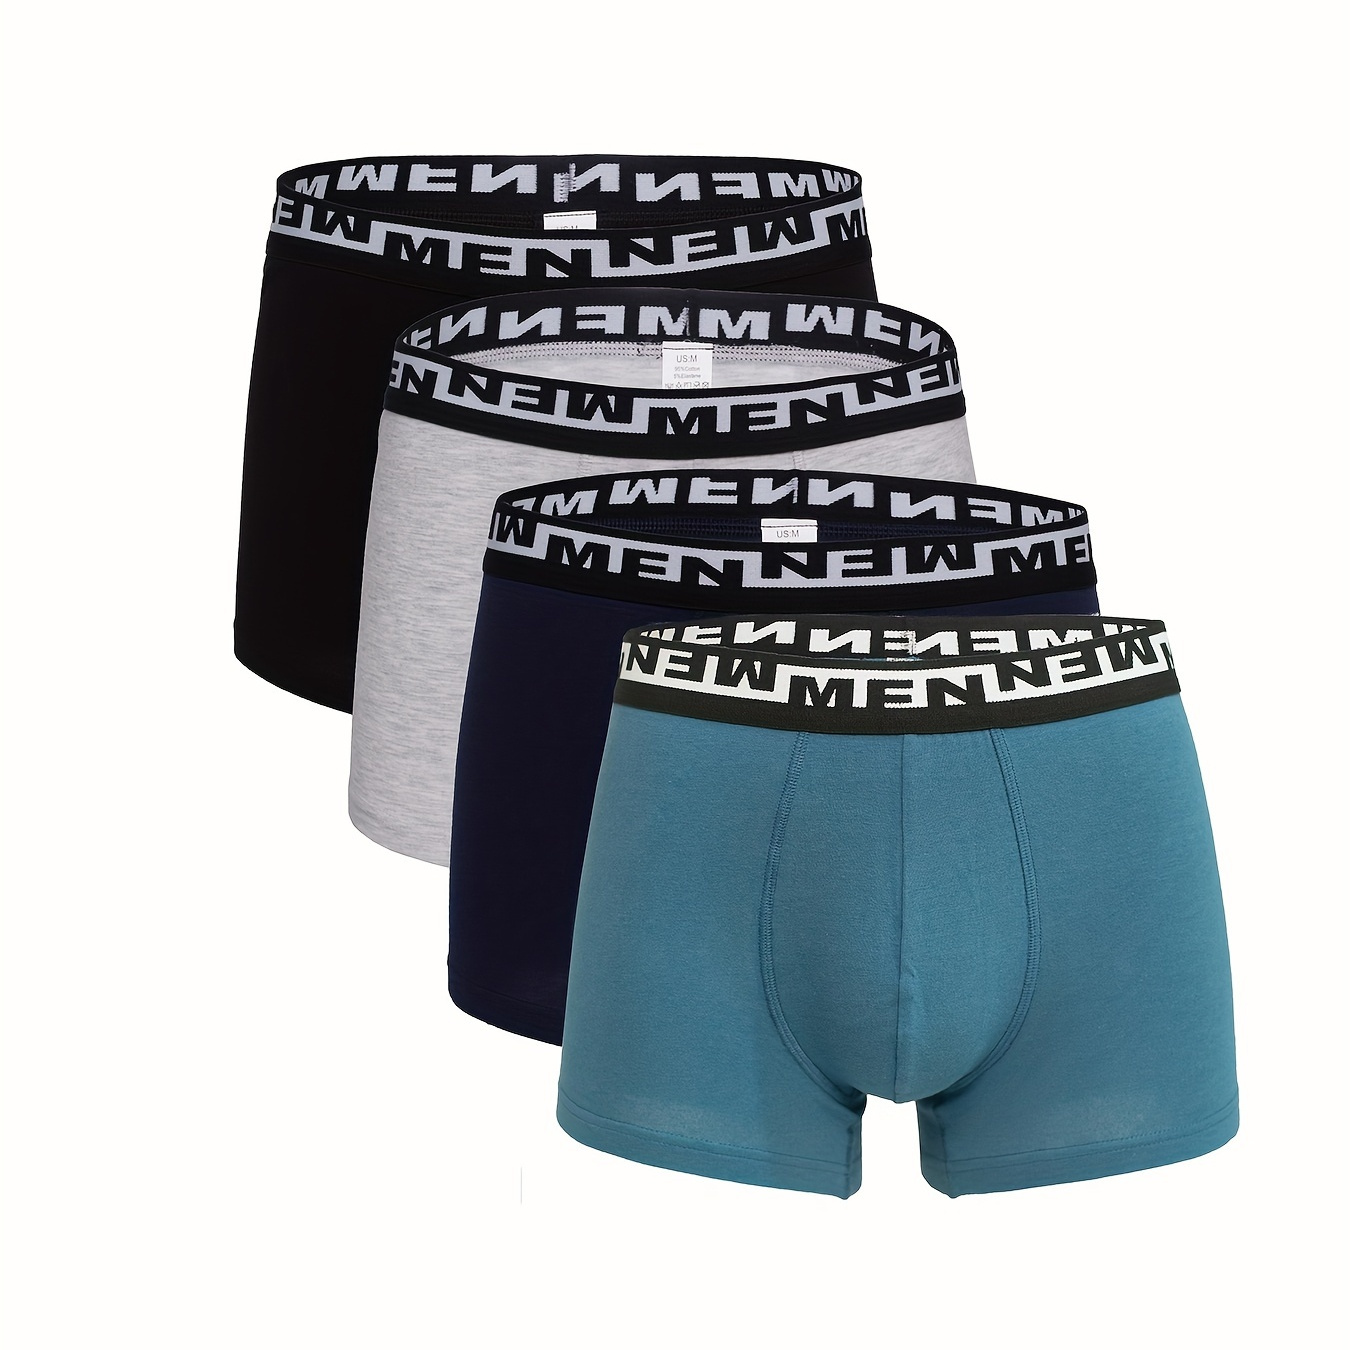 

4pcs Men's Fashion Cotton Breathable Comfy Slightly Stretch Boxer Briefs Shorts, Men Print Men's Underwear